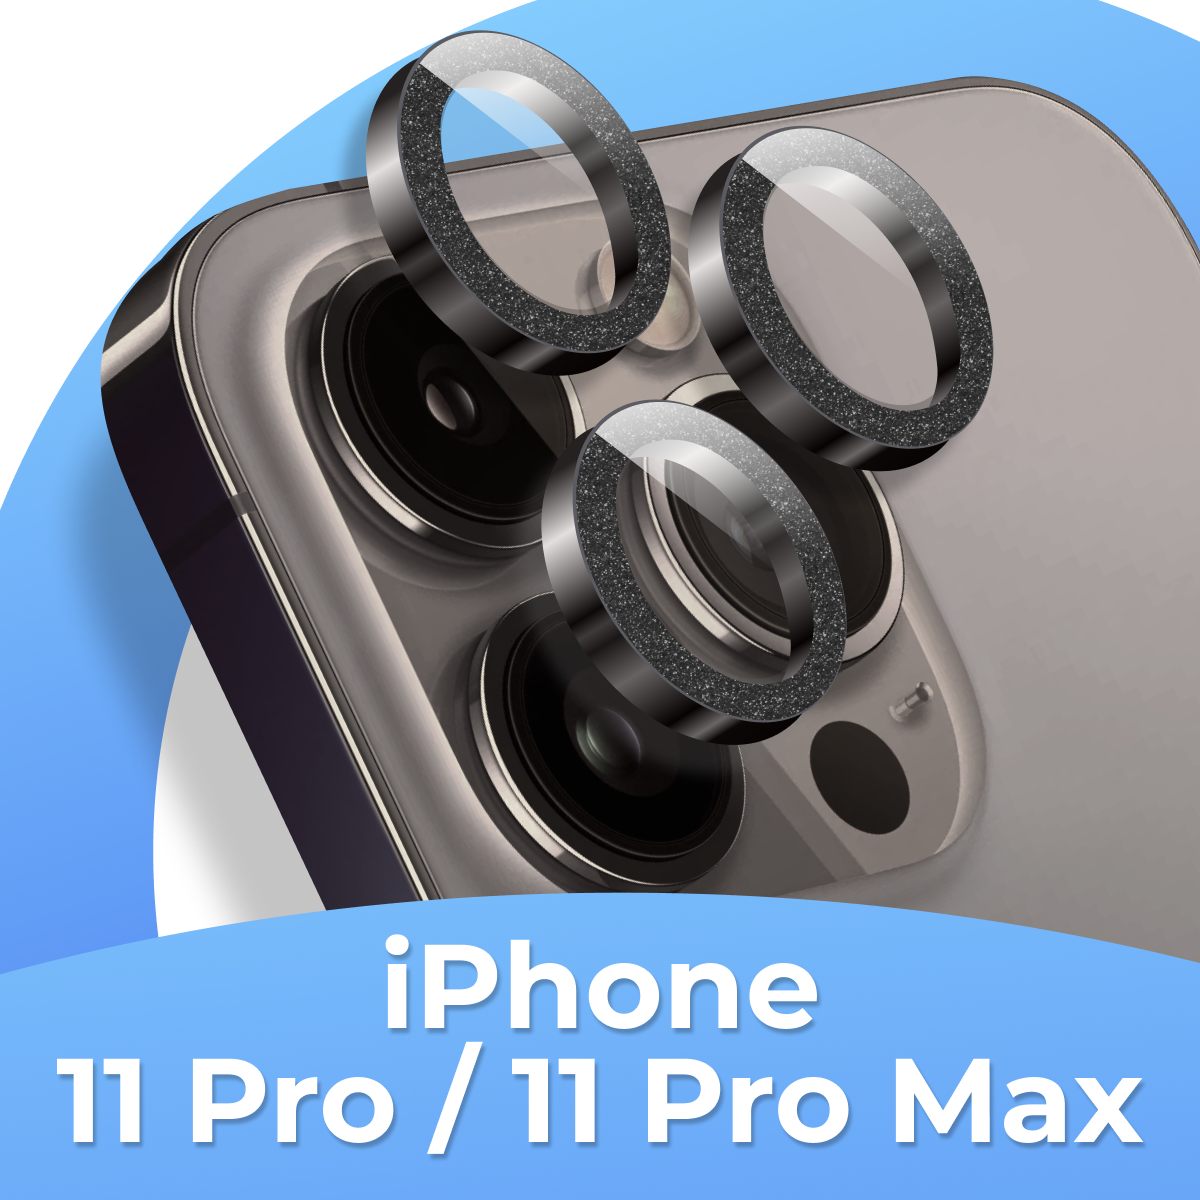 Комплект защитных стекол для камеры Apple iPhone 11 Pro, iPhone 11 Pro Max / Противоударные линзы на камеру Айфон 11 Про, Айфон 11 Про Макс с блестками / Черный